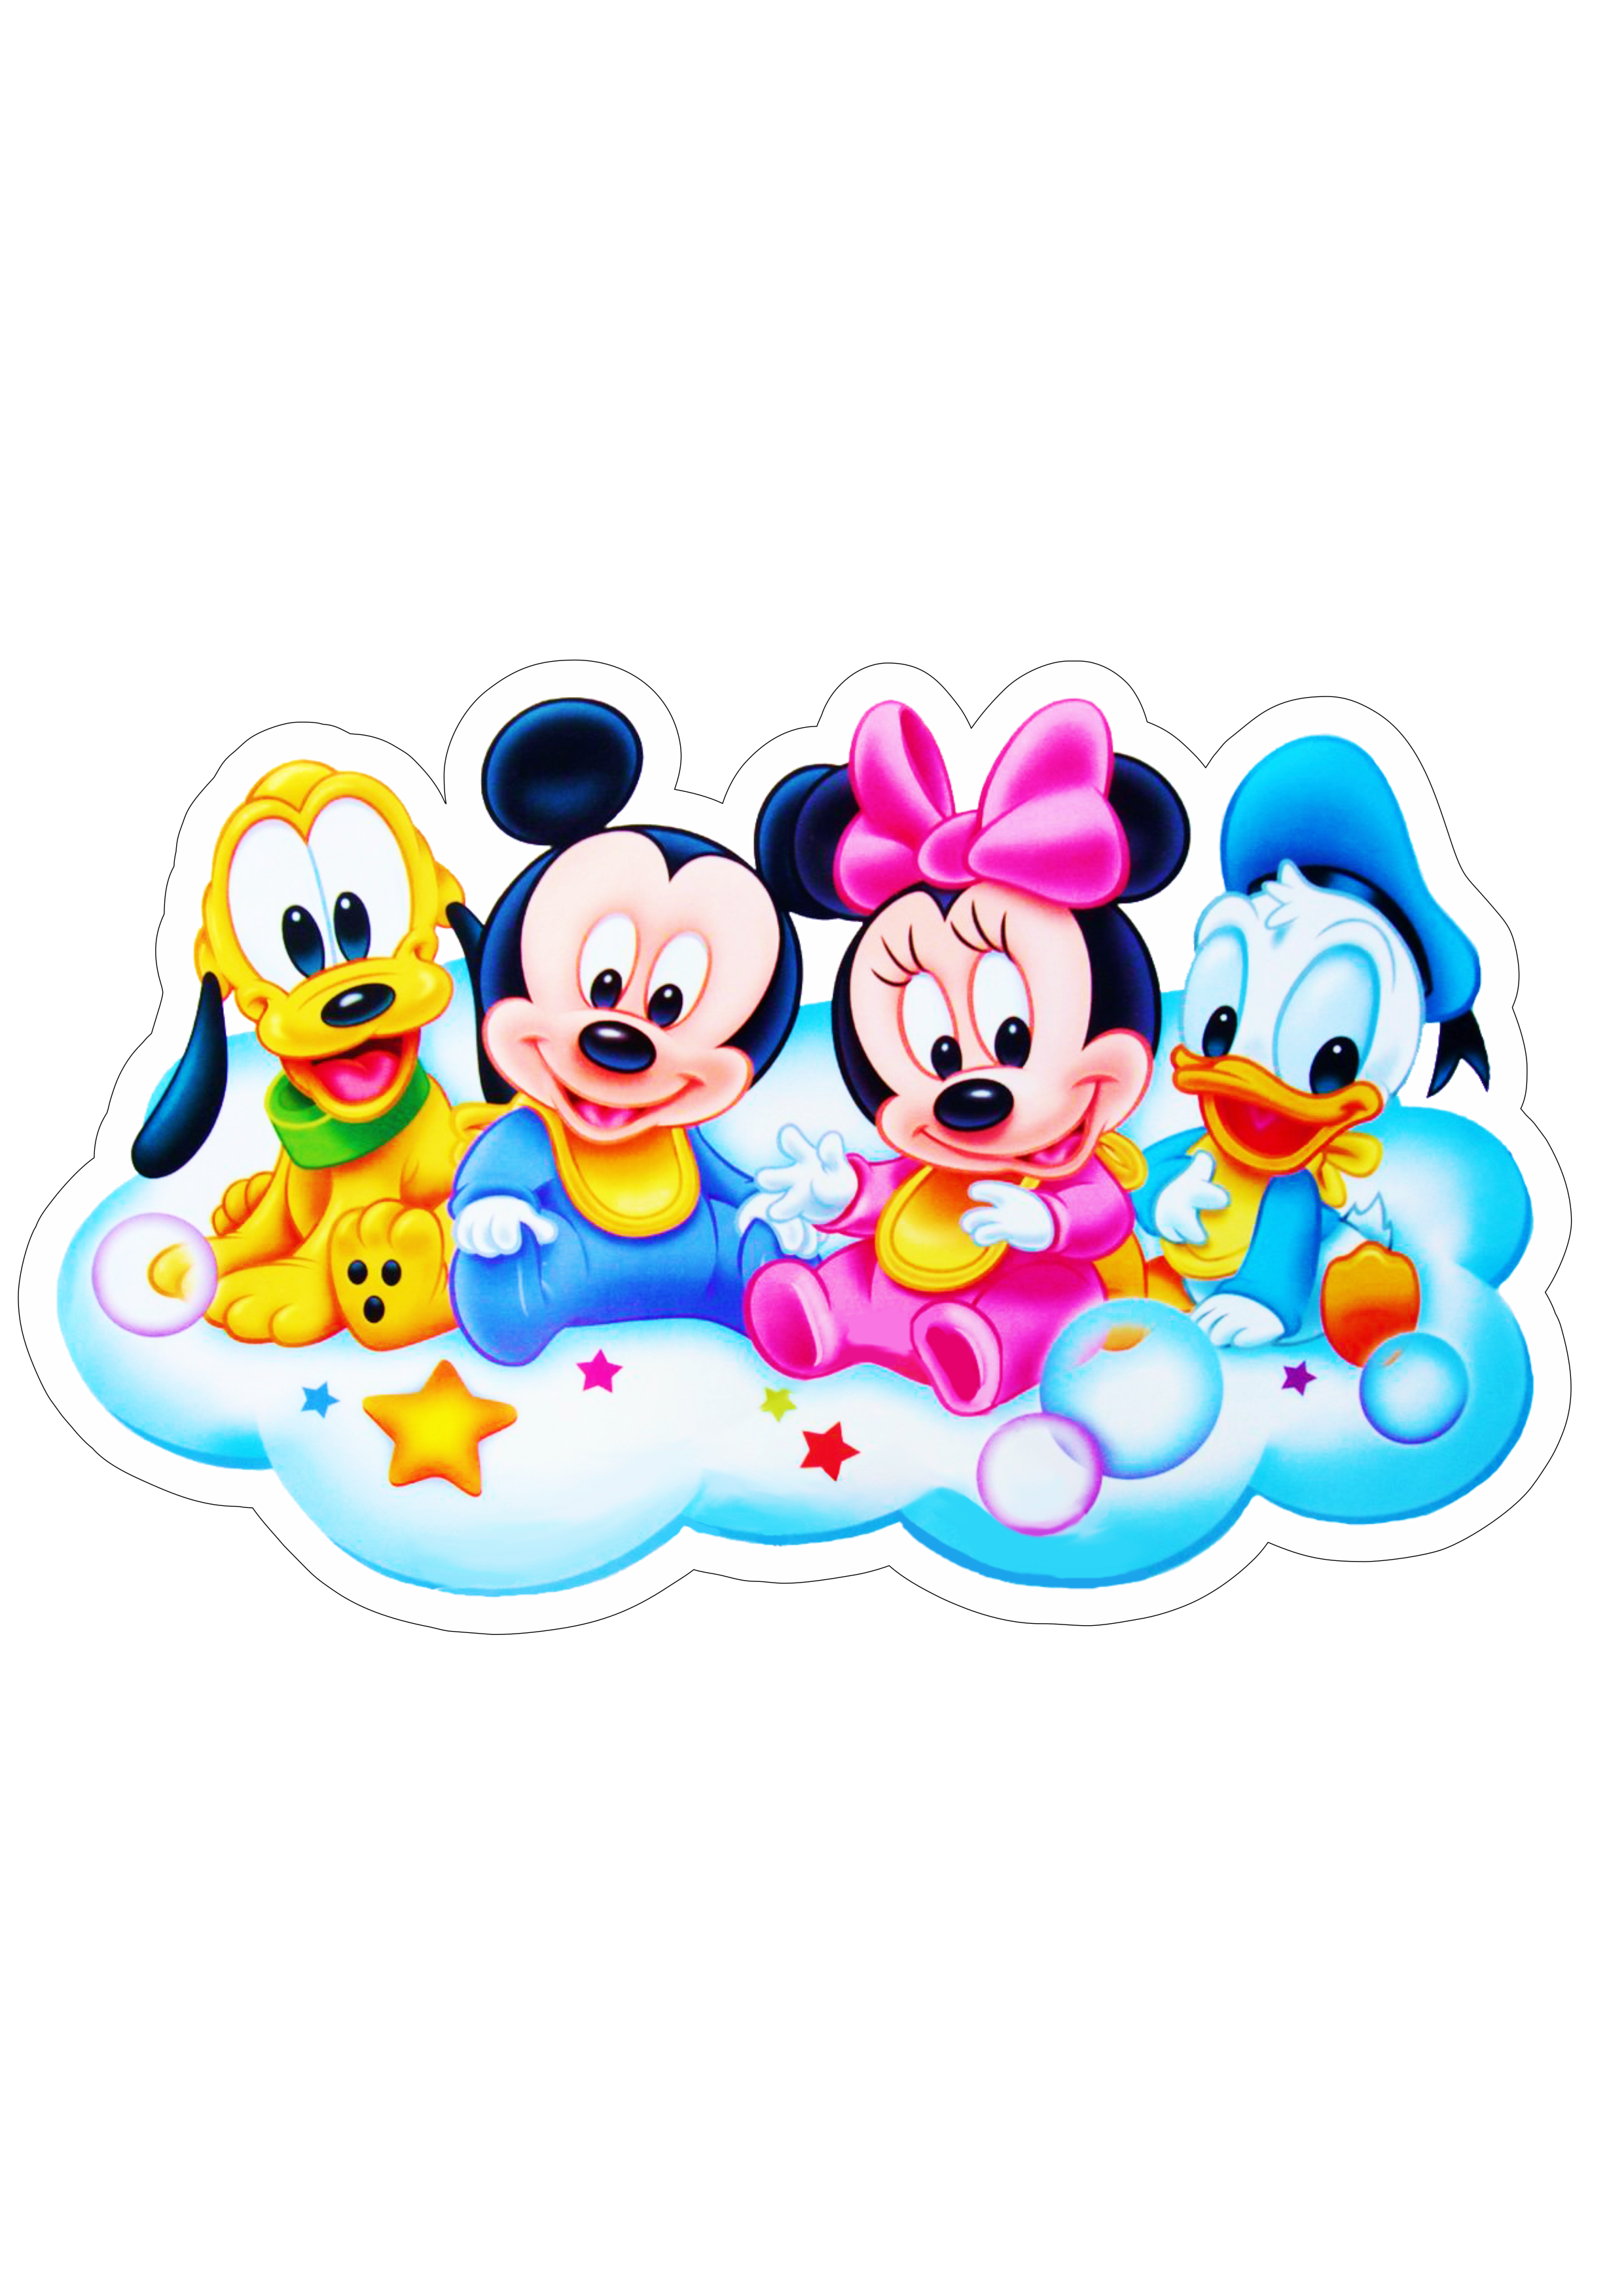 Mickey Minnie Pluto e Pato Donald baby fundo transparente com contorno Disney png